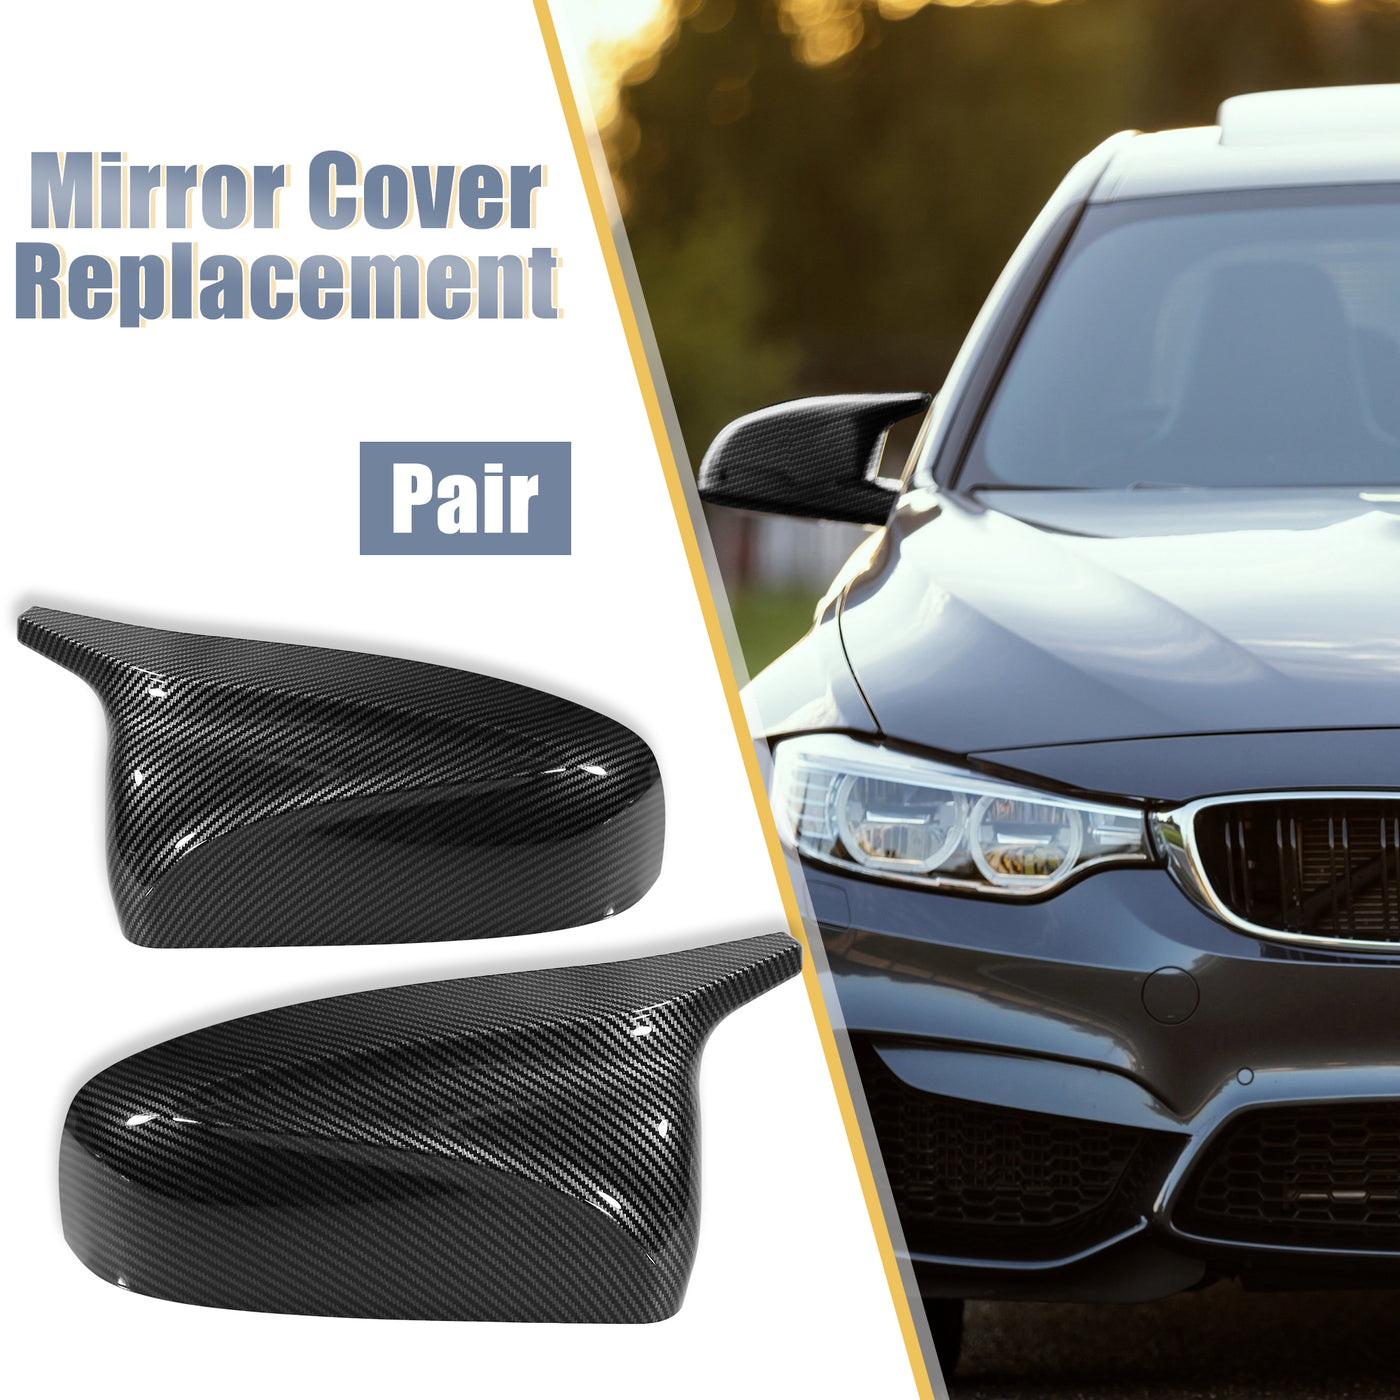 X AUTOHAUX Pair Car Exterior Rear View Mirror Covers Cap Replacement for BMW X5 E70 X6 E71 E72 2006-2014 Carbon Fiber Pattern